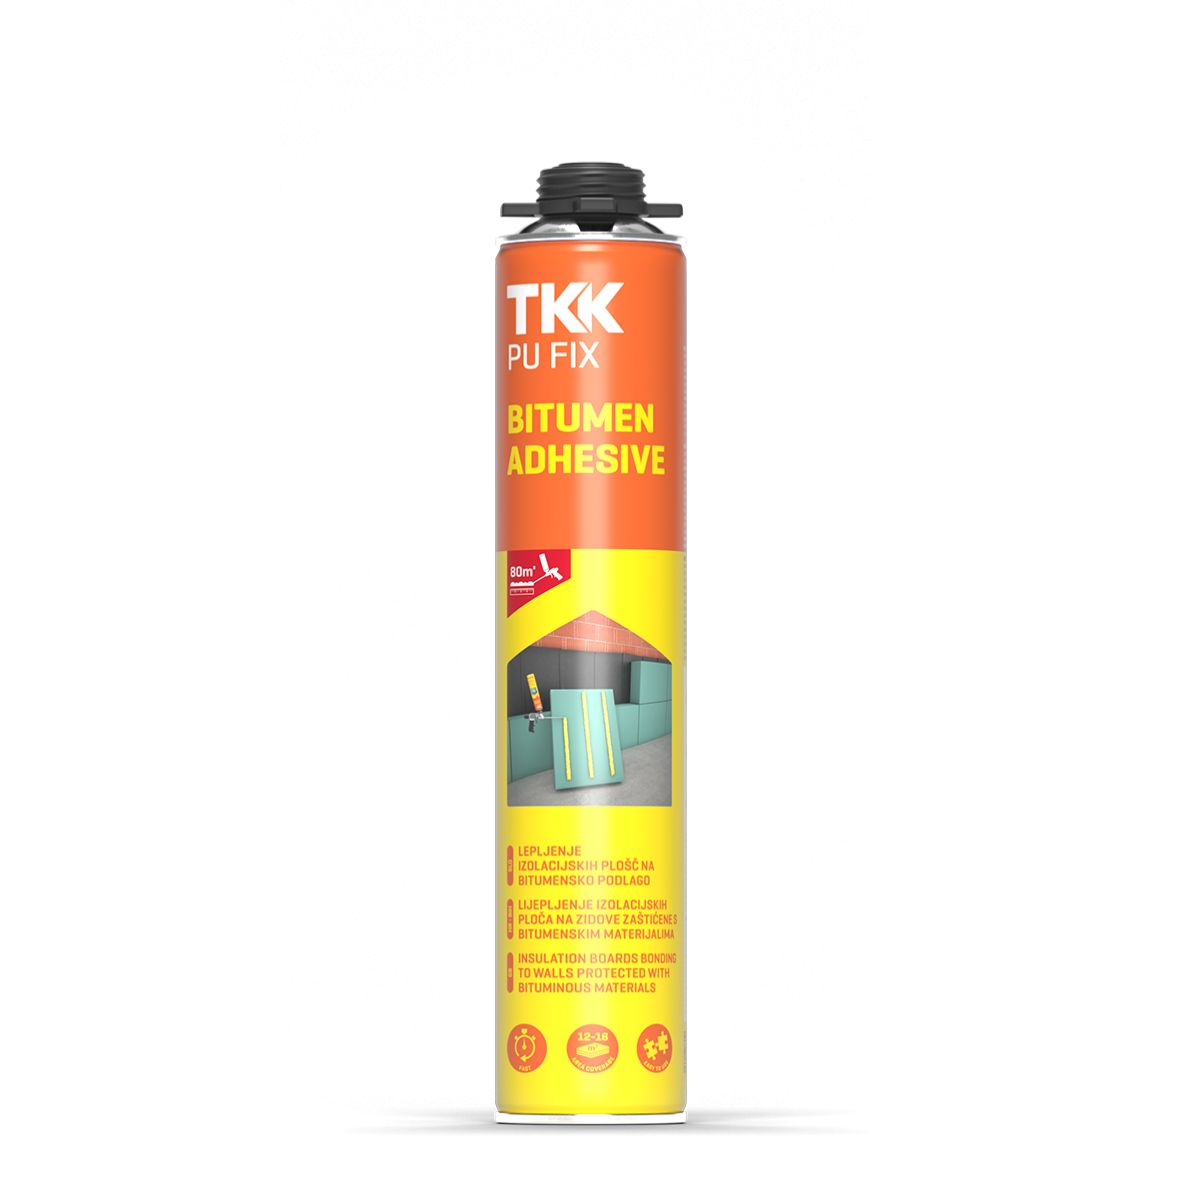 TKK Pu Fix Bitumen Adhesive Winter G